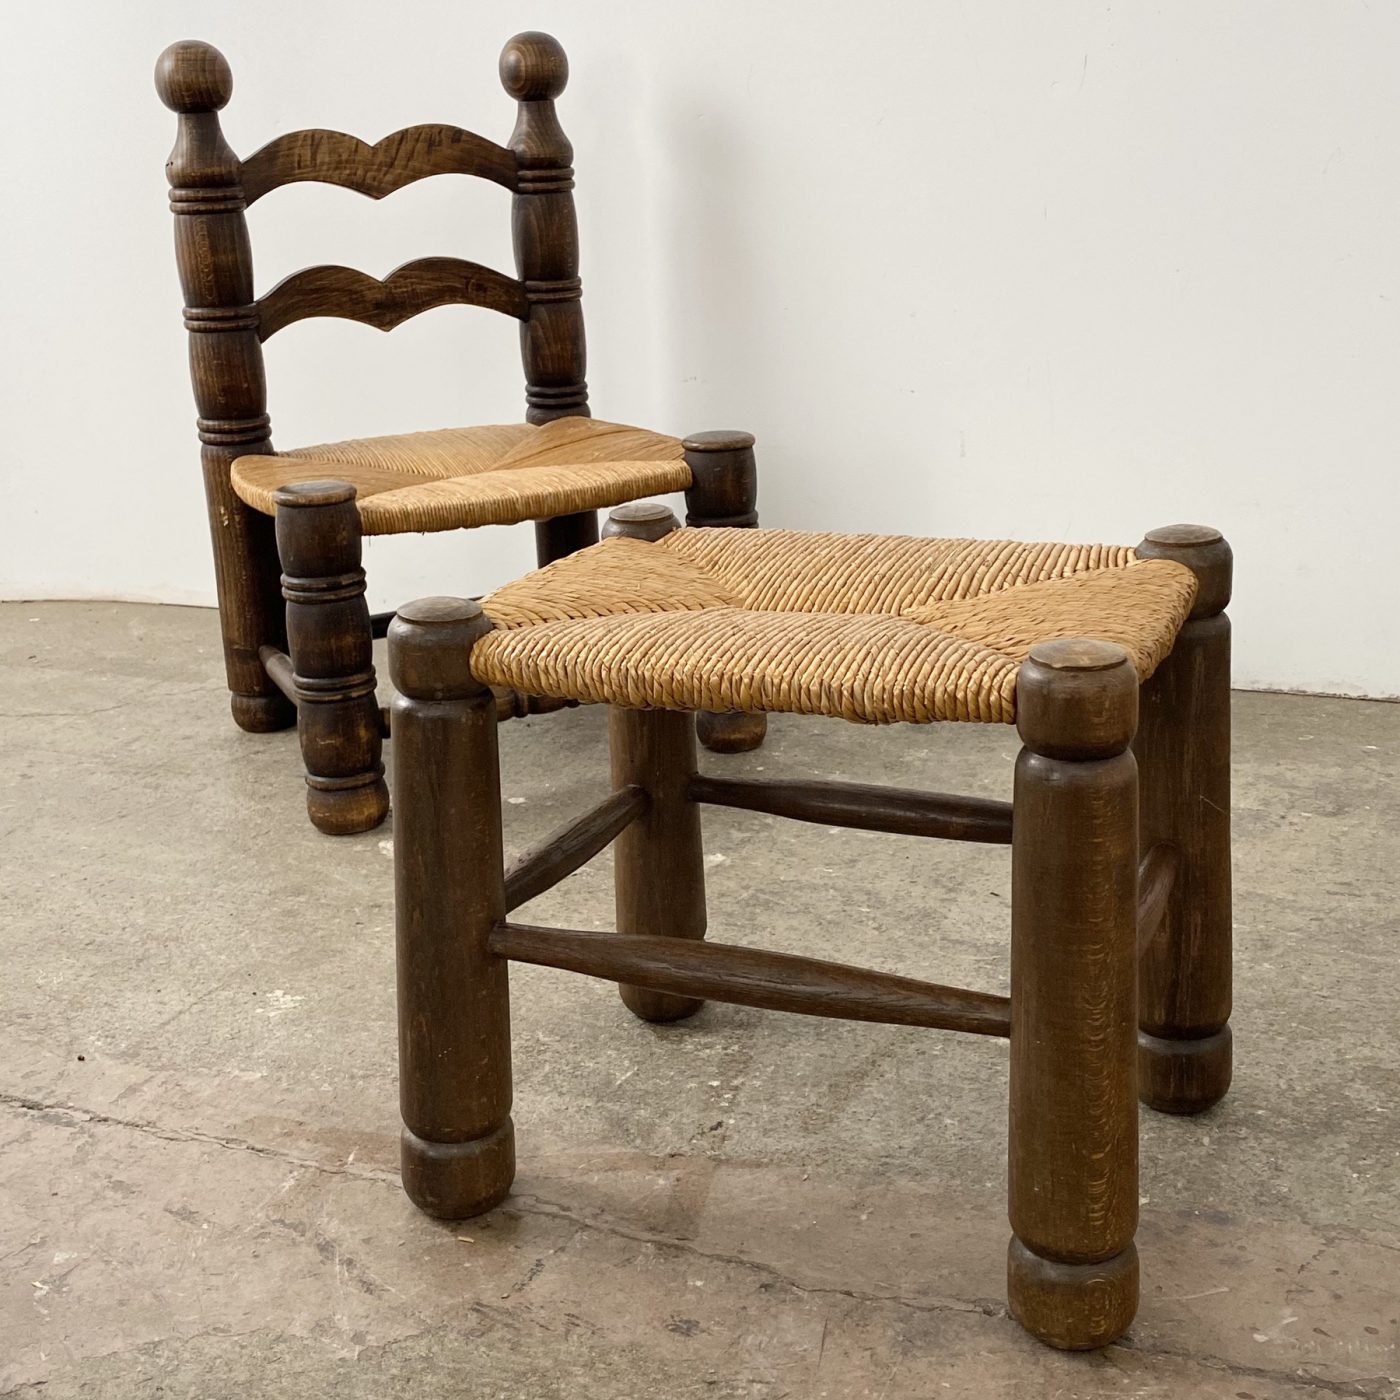 objet-vagabond-dudouyt-chairs0005